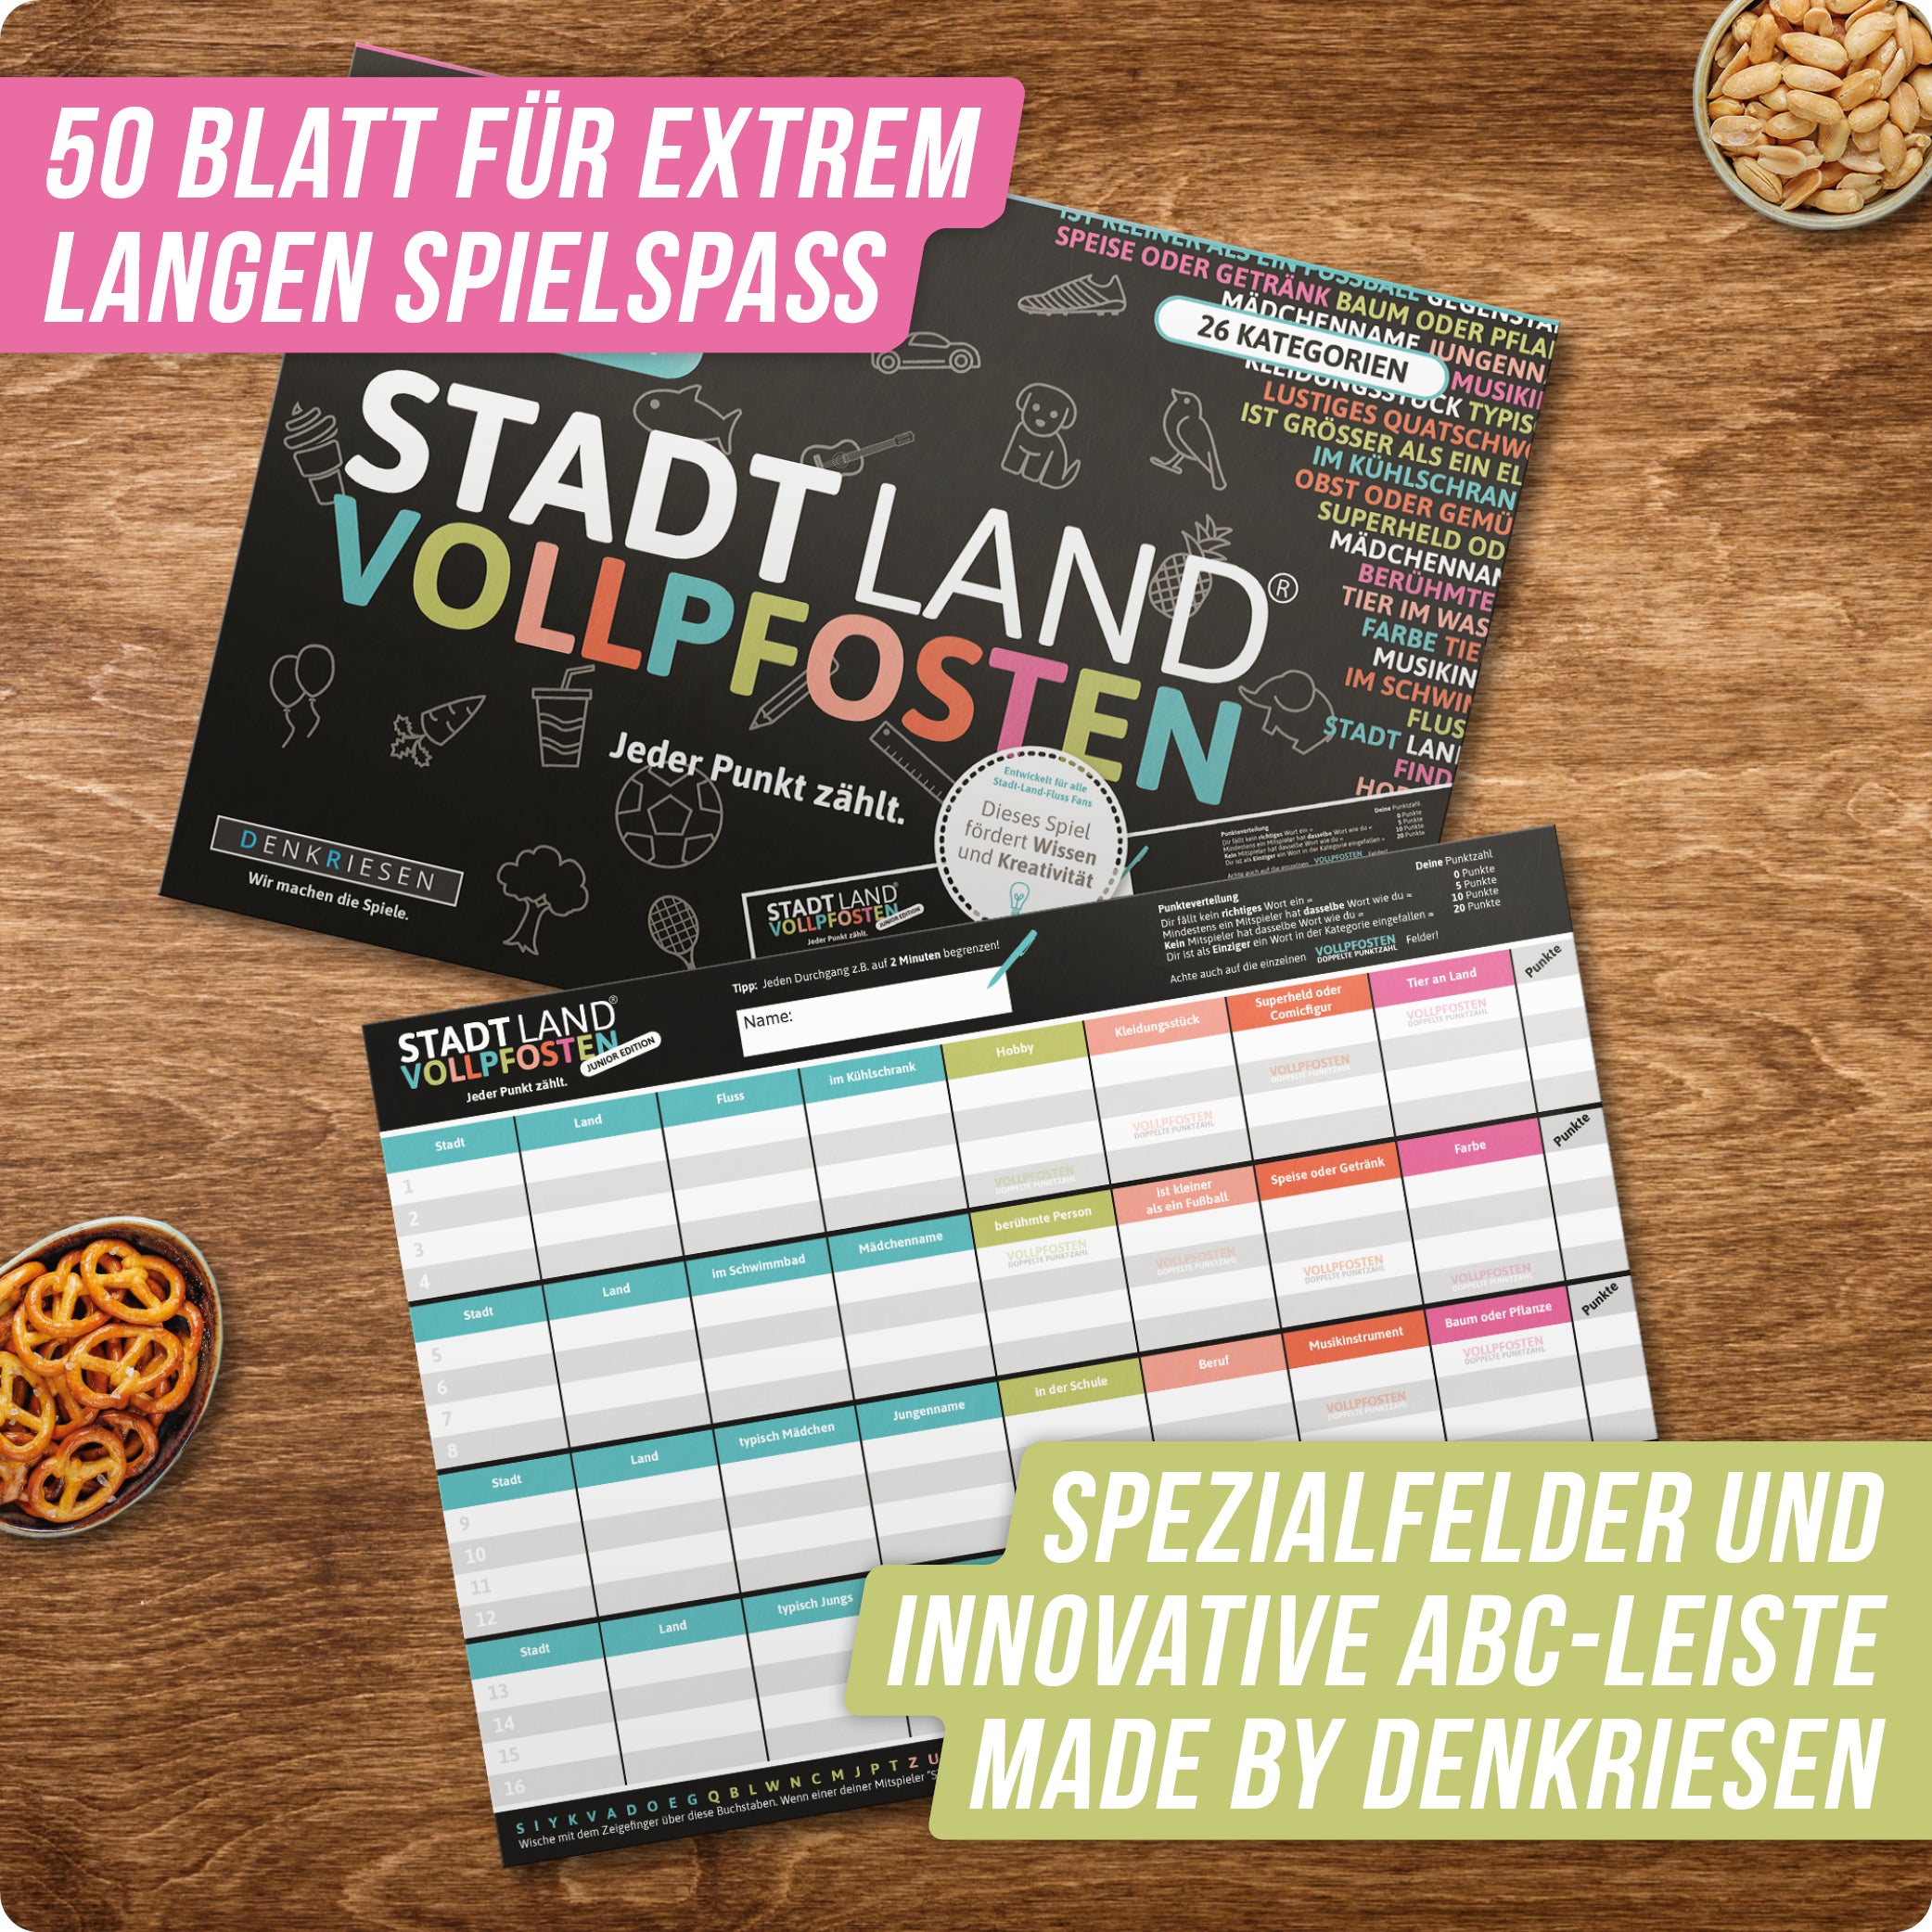 Stadt Land Vollpfosten® Junior Edition – "Jeder Punkt zählt." | A4 Spielblock